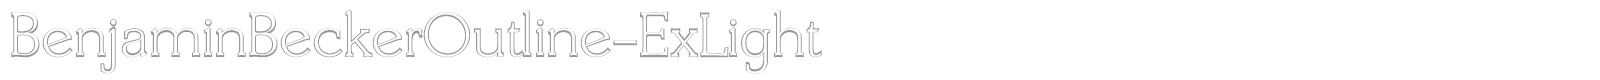 BenjaminBeckerOutline-ExLight font preview